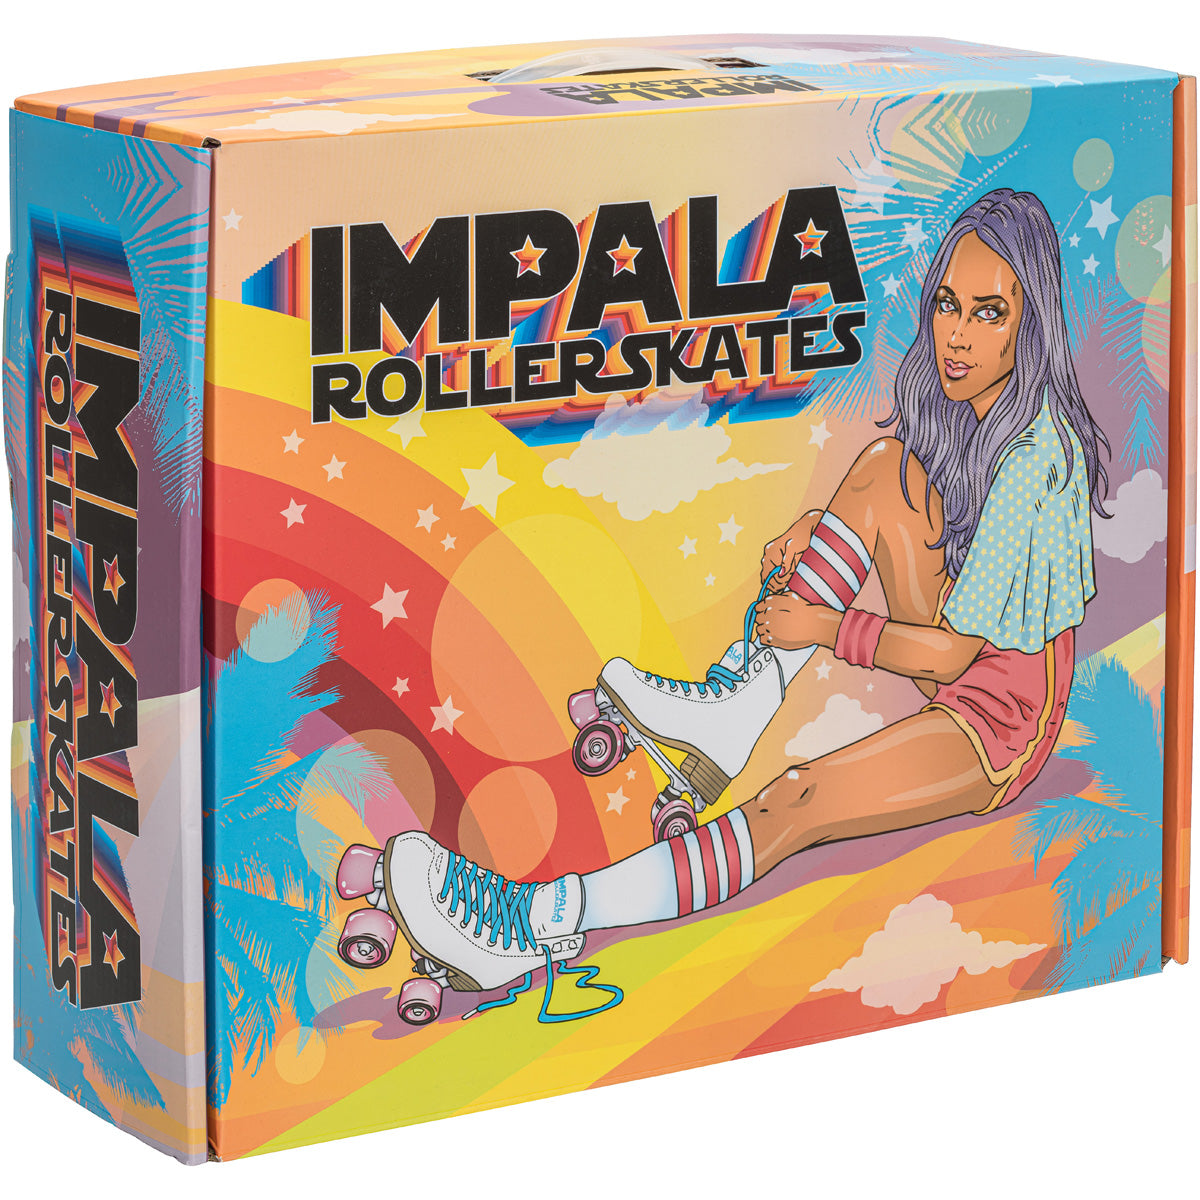 Impala Rollerskates - White - Impala Rollerskates